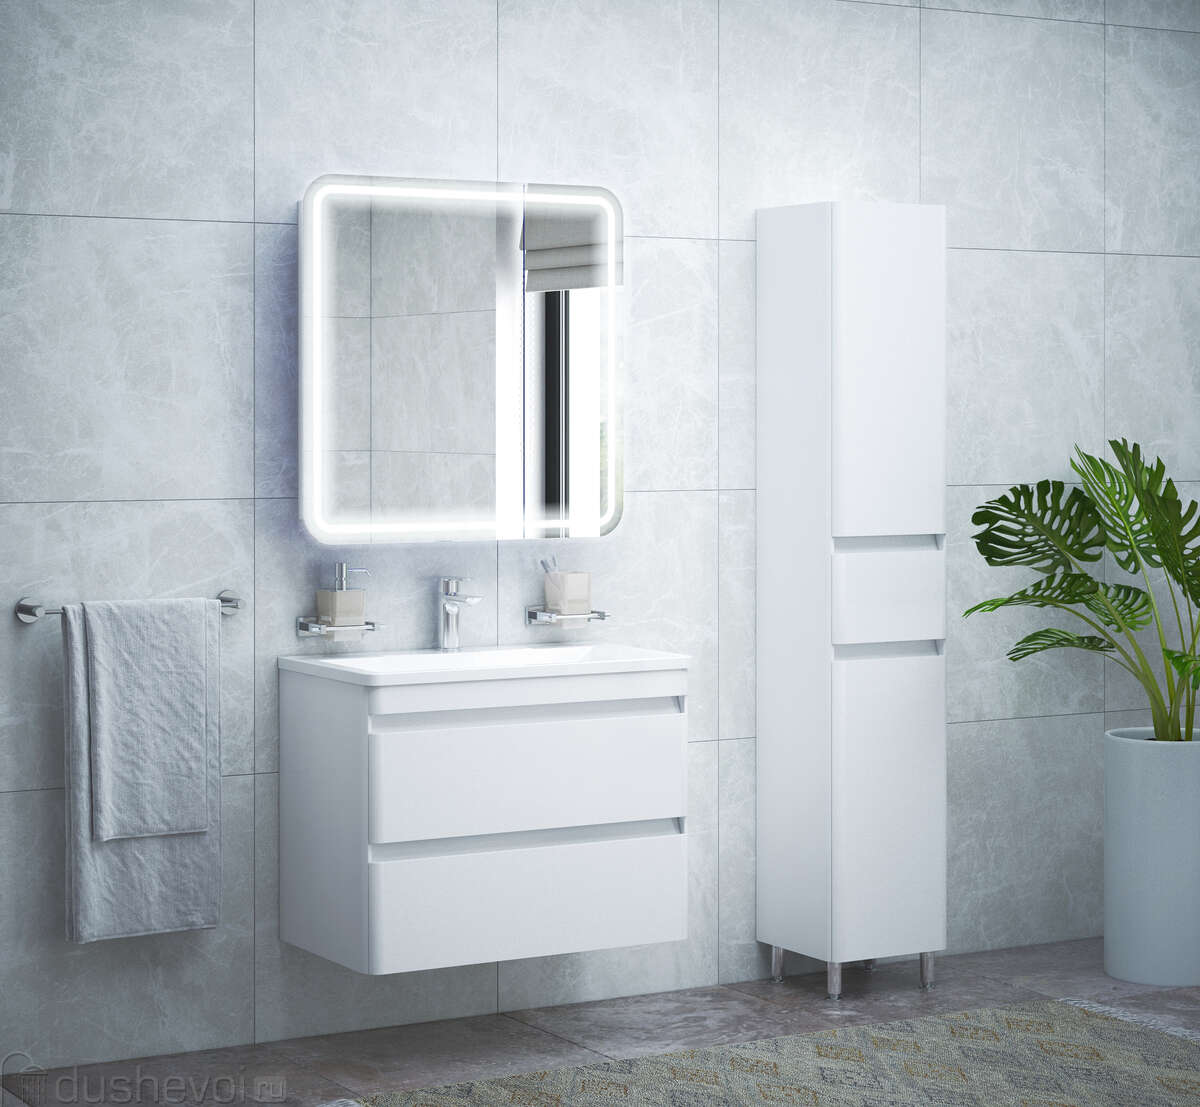 Мебель для ванной комнаты – купить в Новосибирске цены от ₽. Интернет-магазин - Склад Ремонта